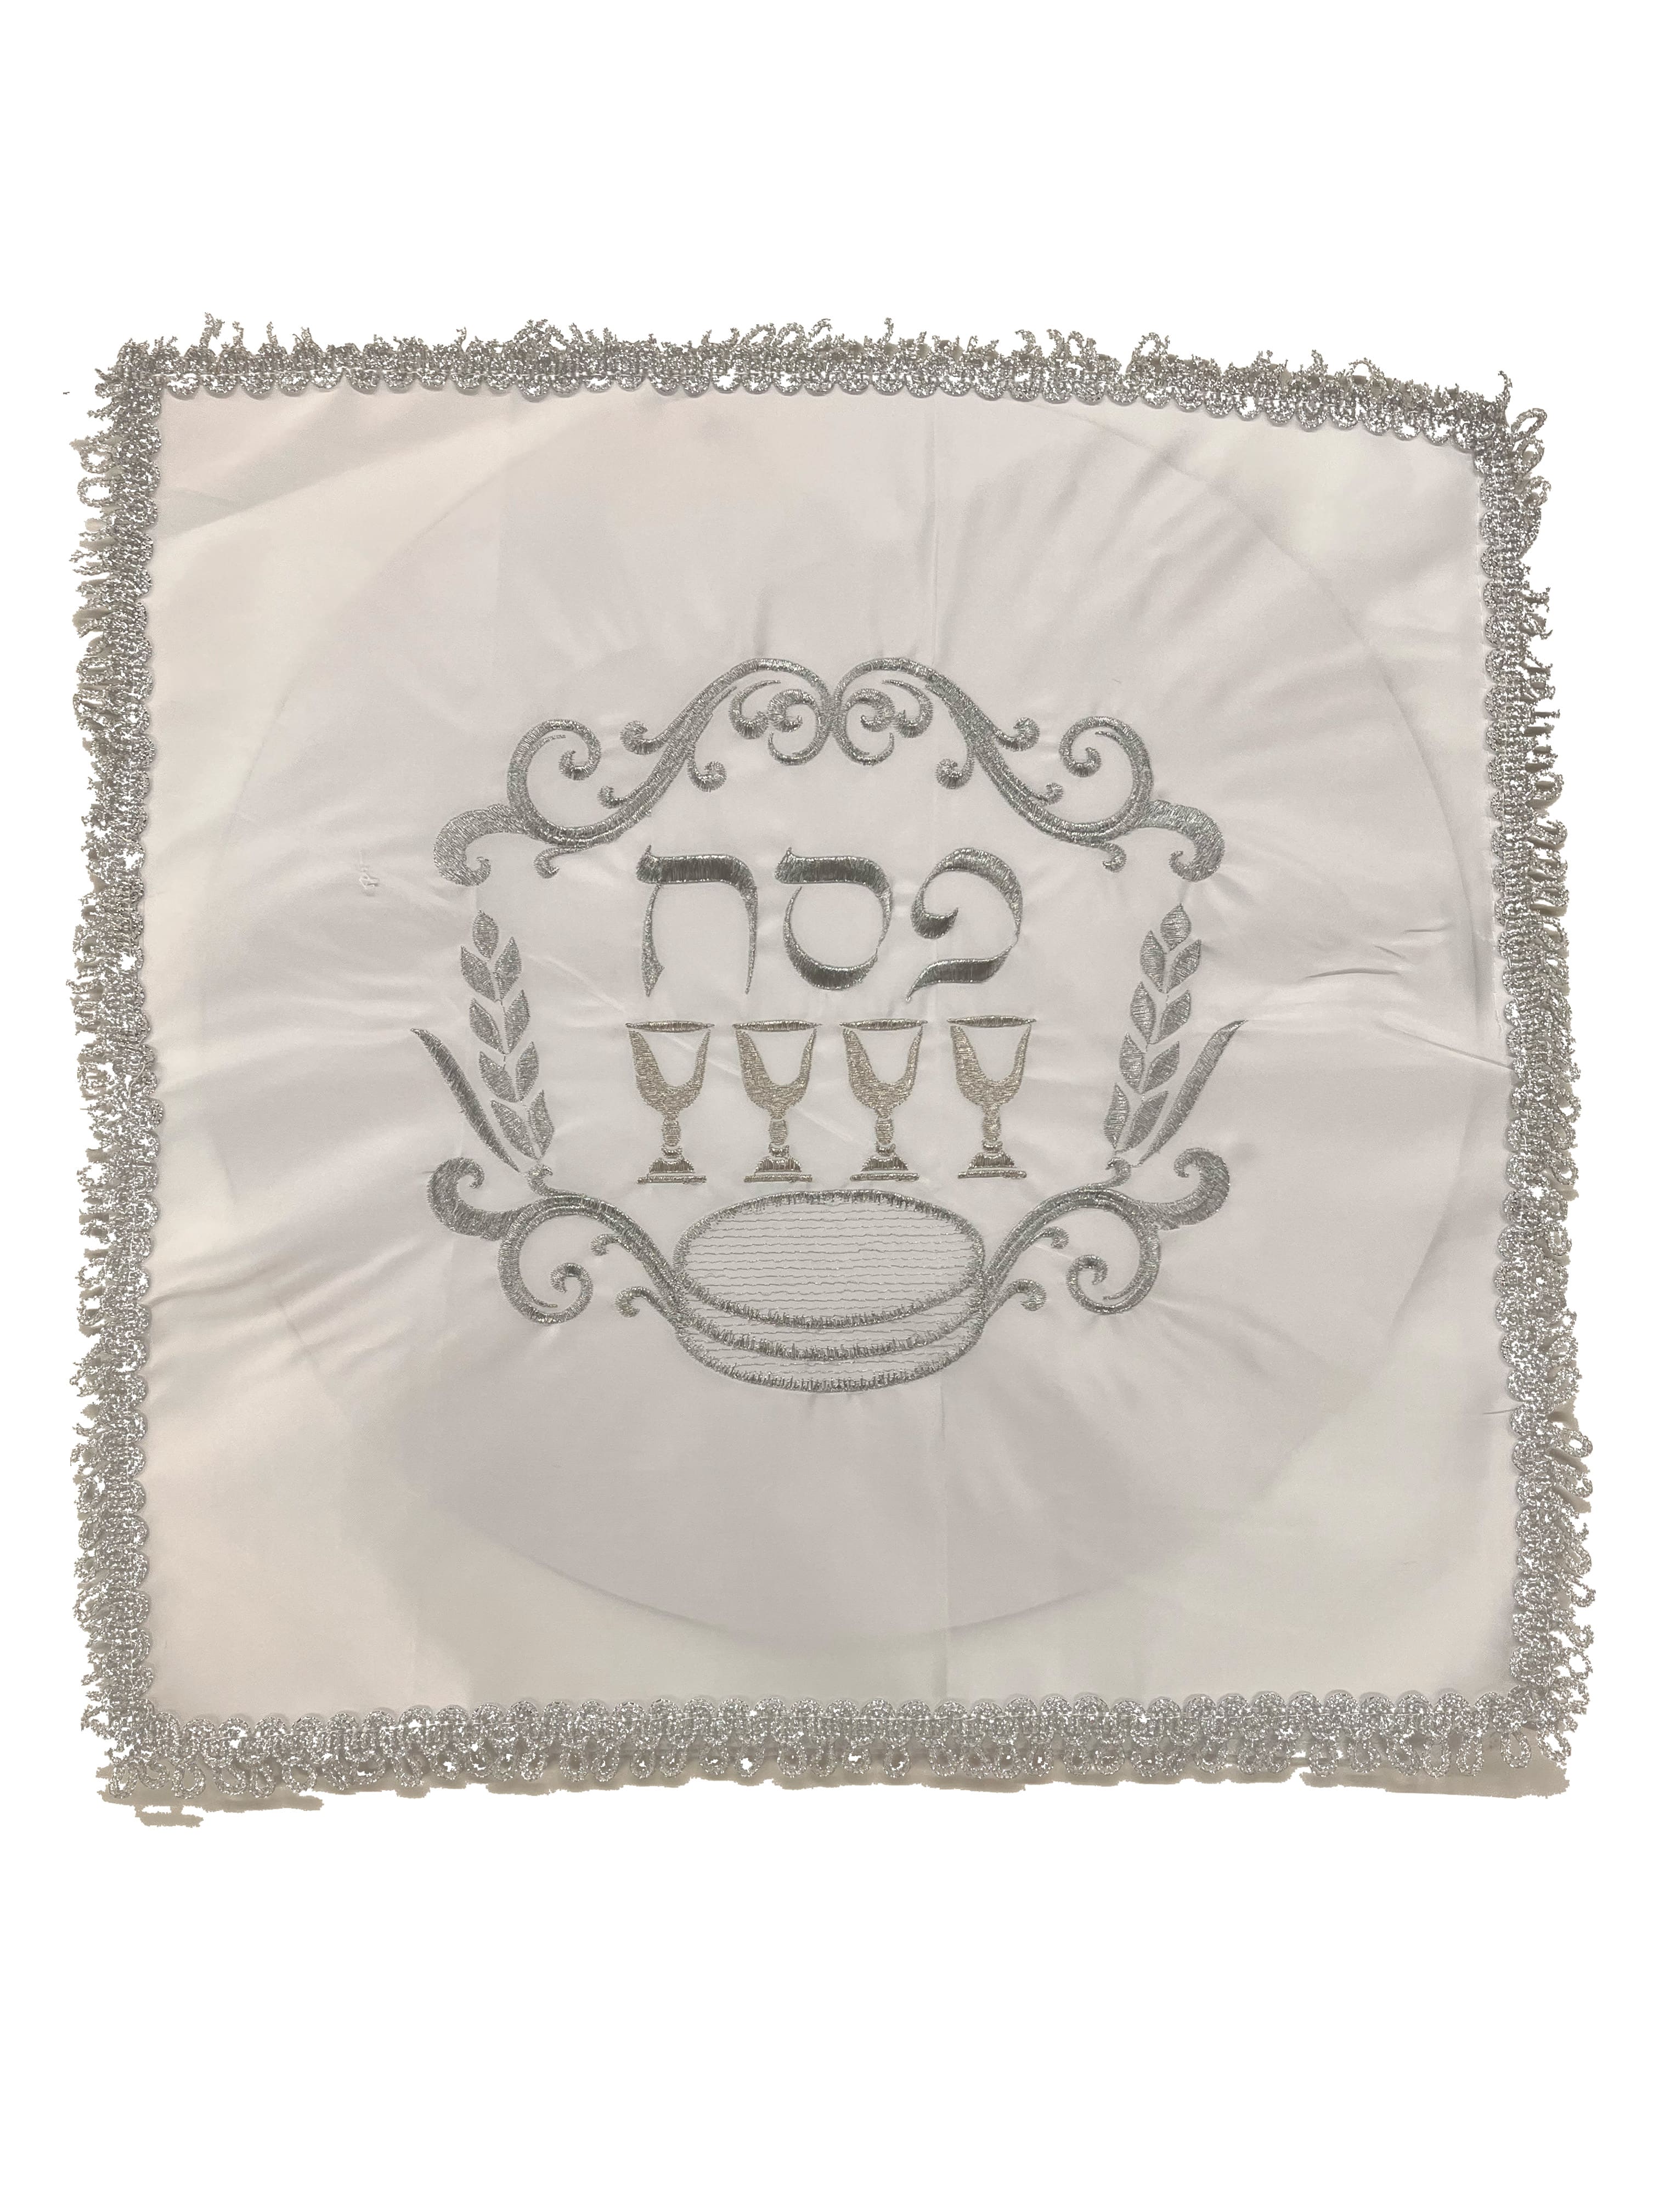 Matzah Cover - White satin, square - Sydney Jewish Museum